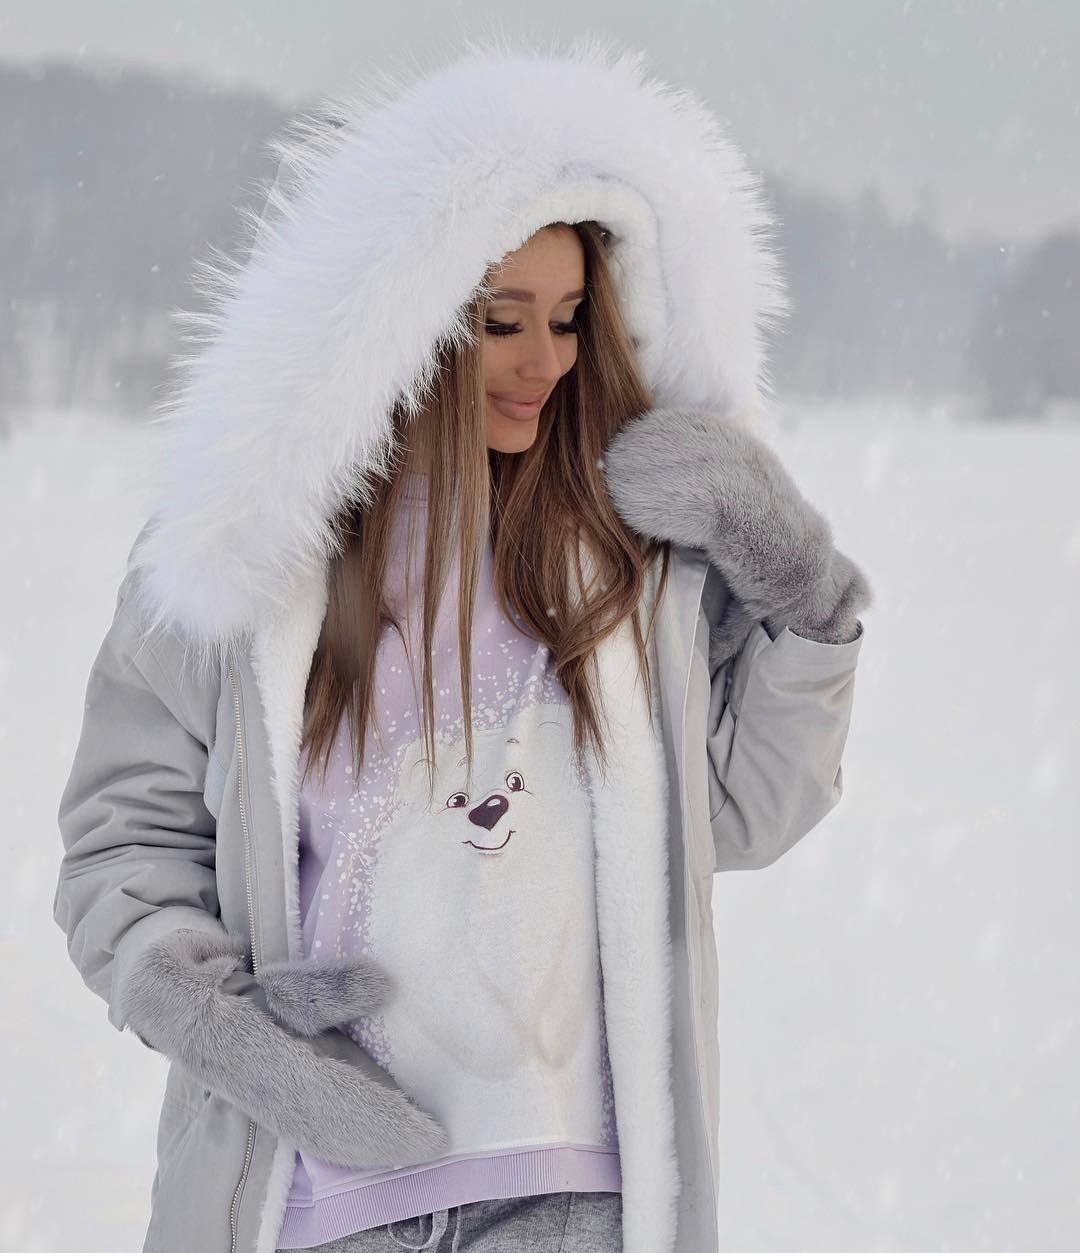 Теплая одежда зима. Девушка в зимней одежде. Зимние образы.